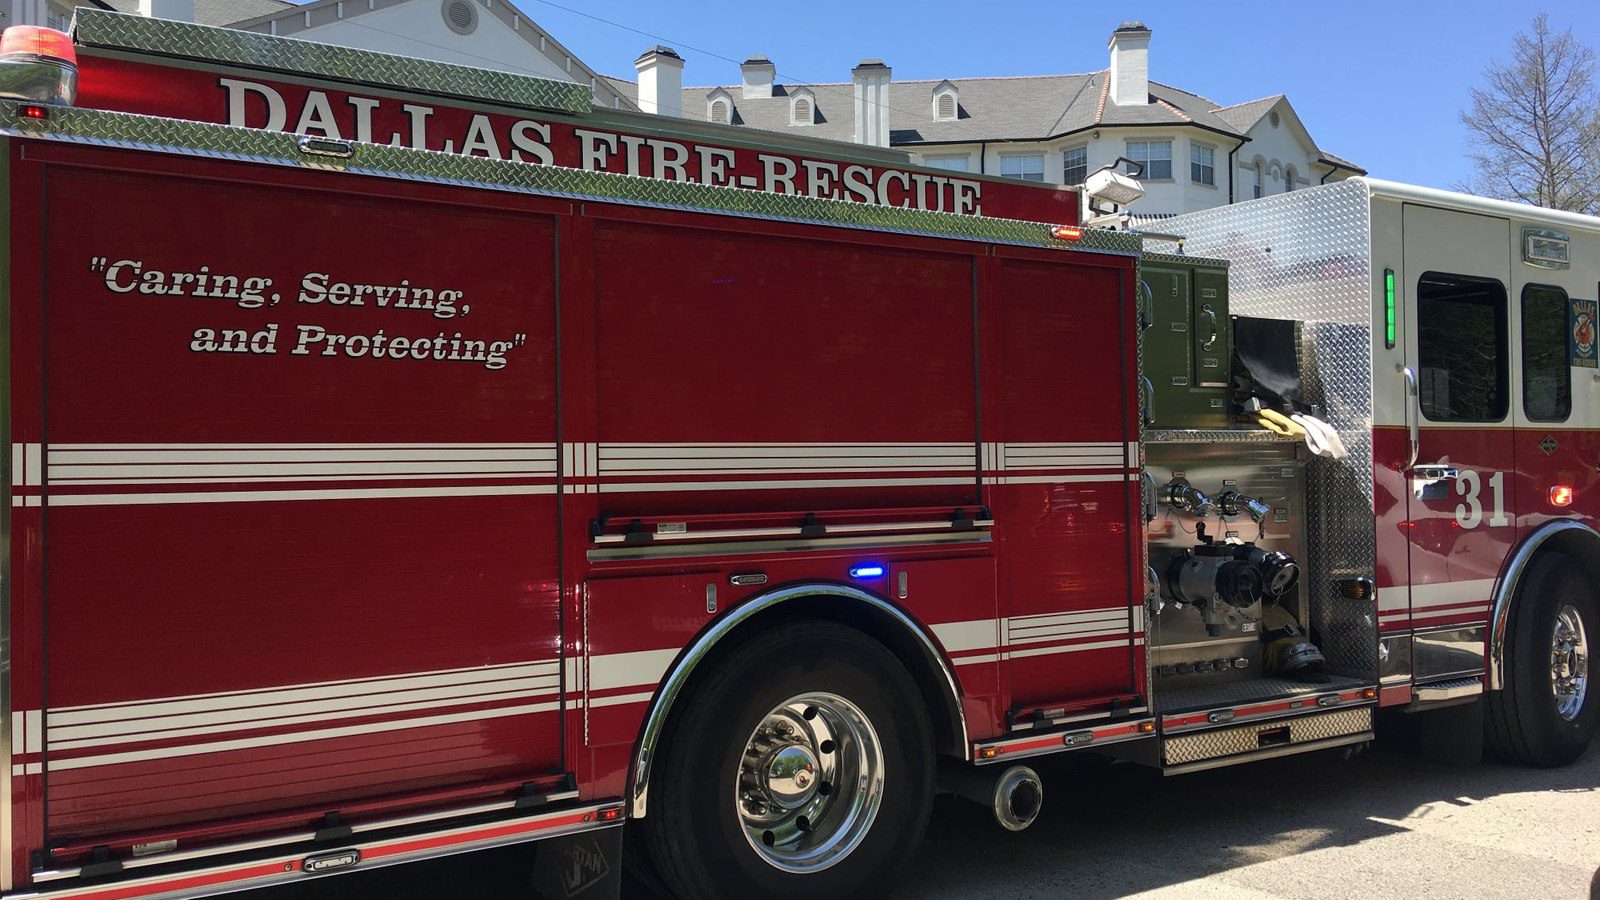 Dallas Fire Rescue_Truck_DFR